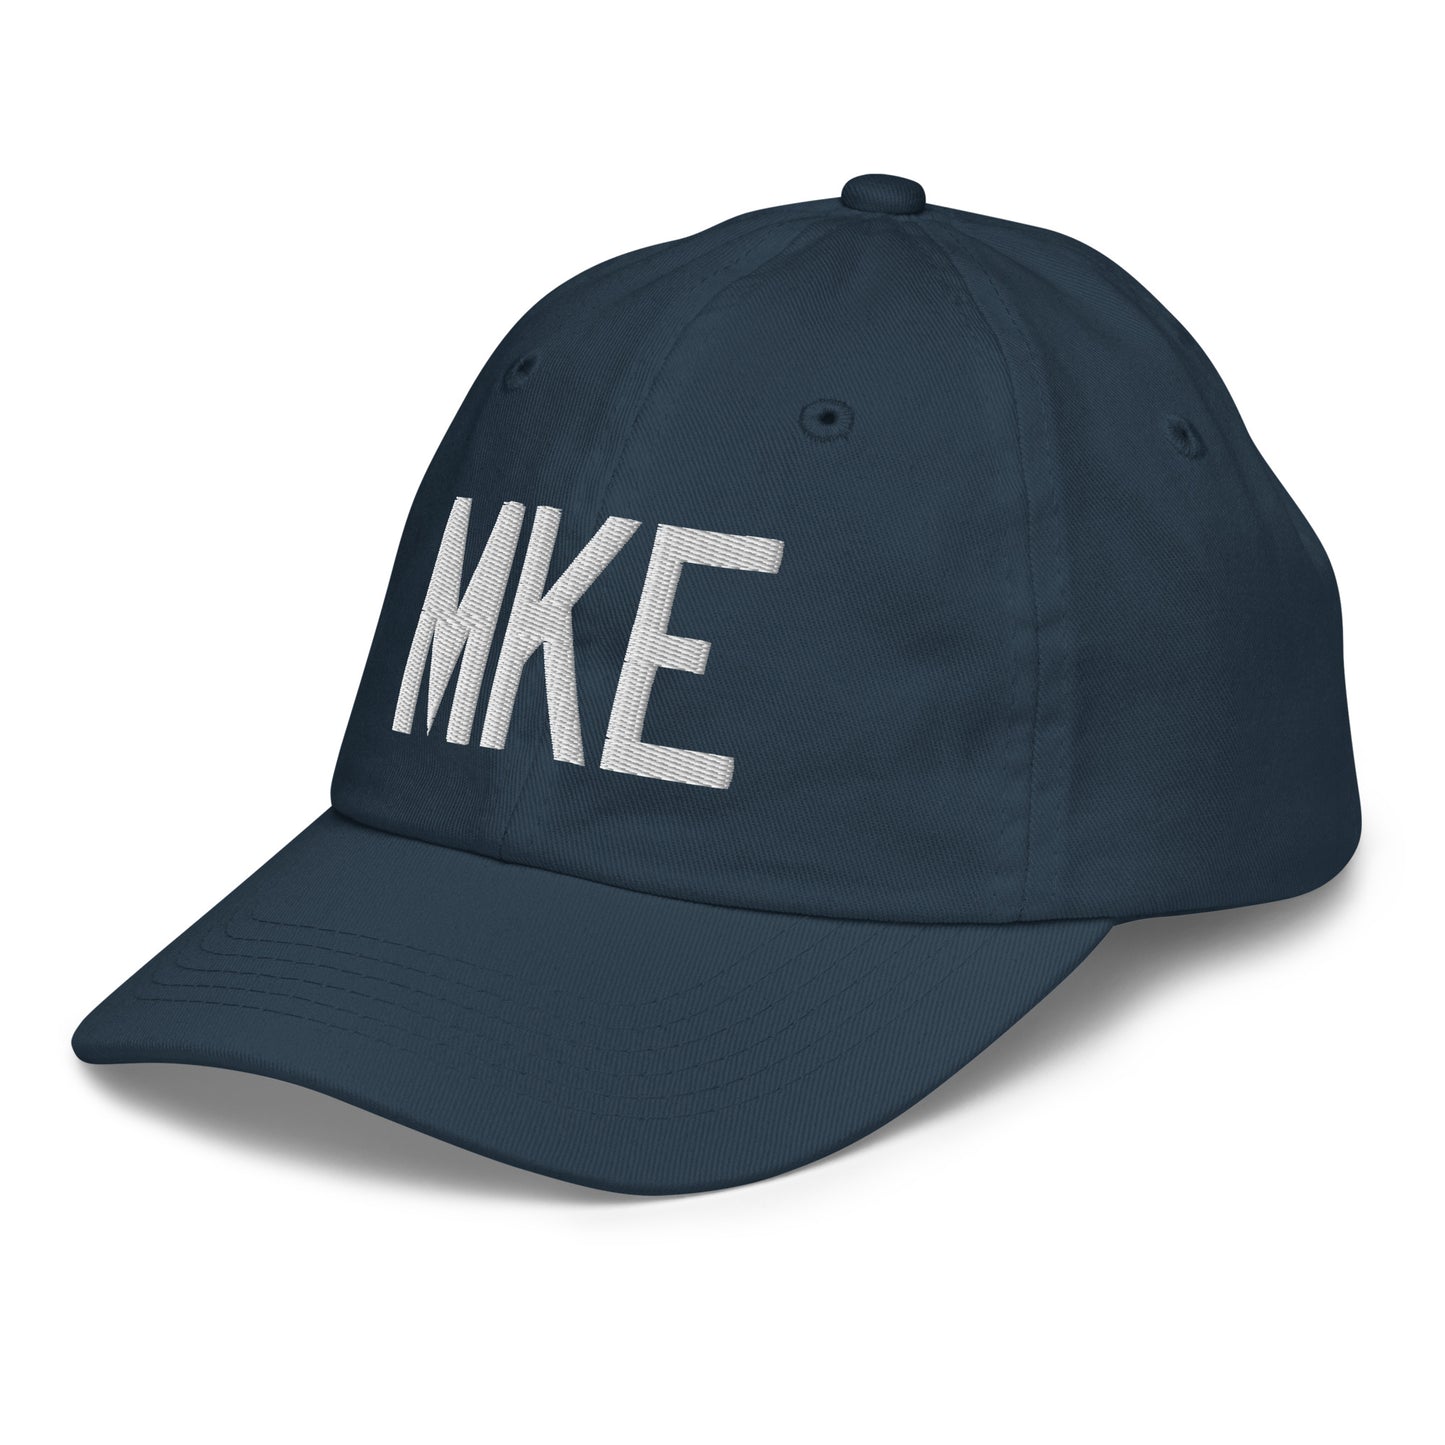 Airport Code Kid's Baseball Cap - White • MKE Milwaukee • YHM Designs - Image 16